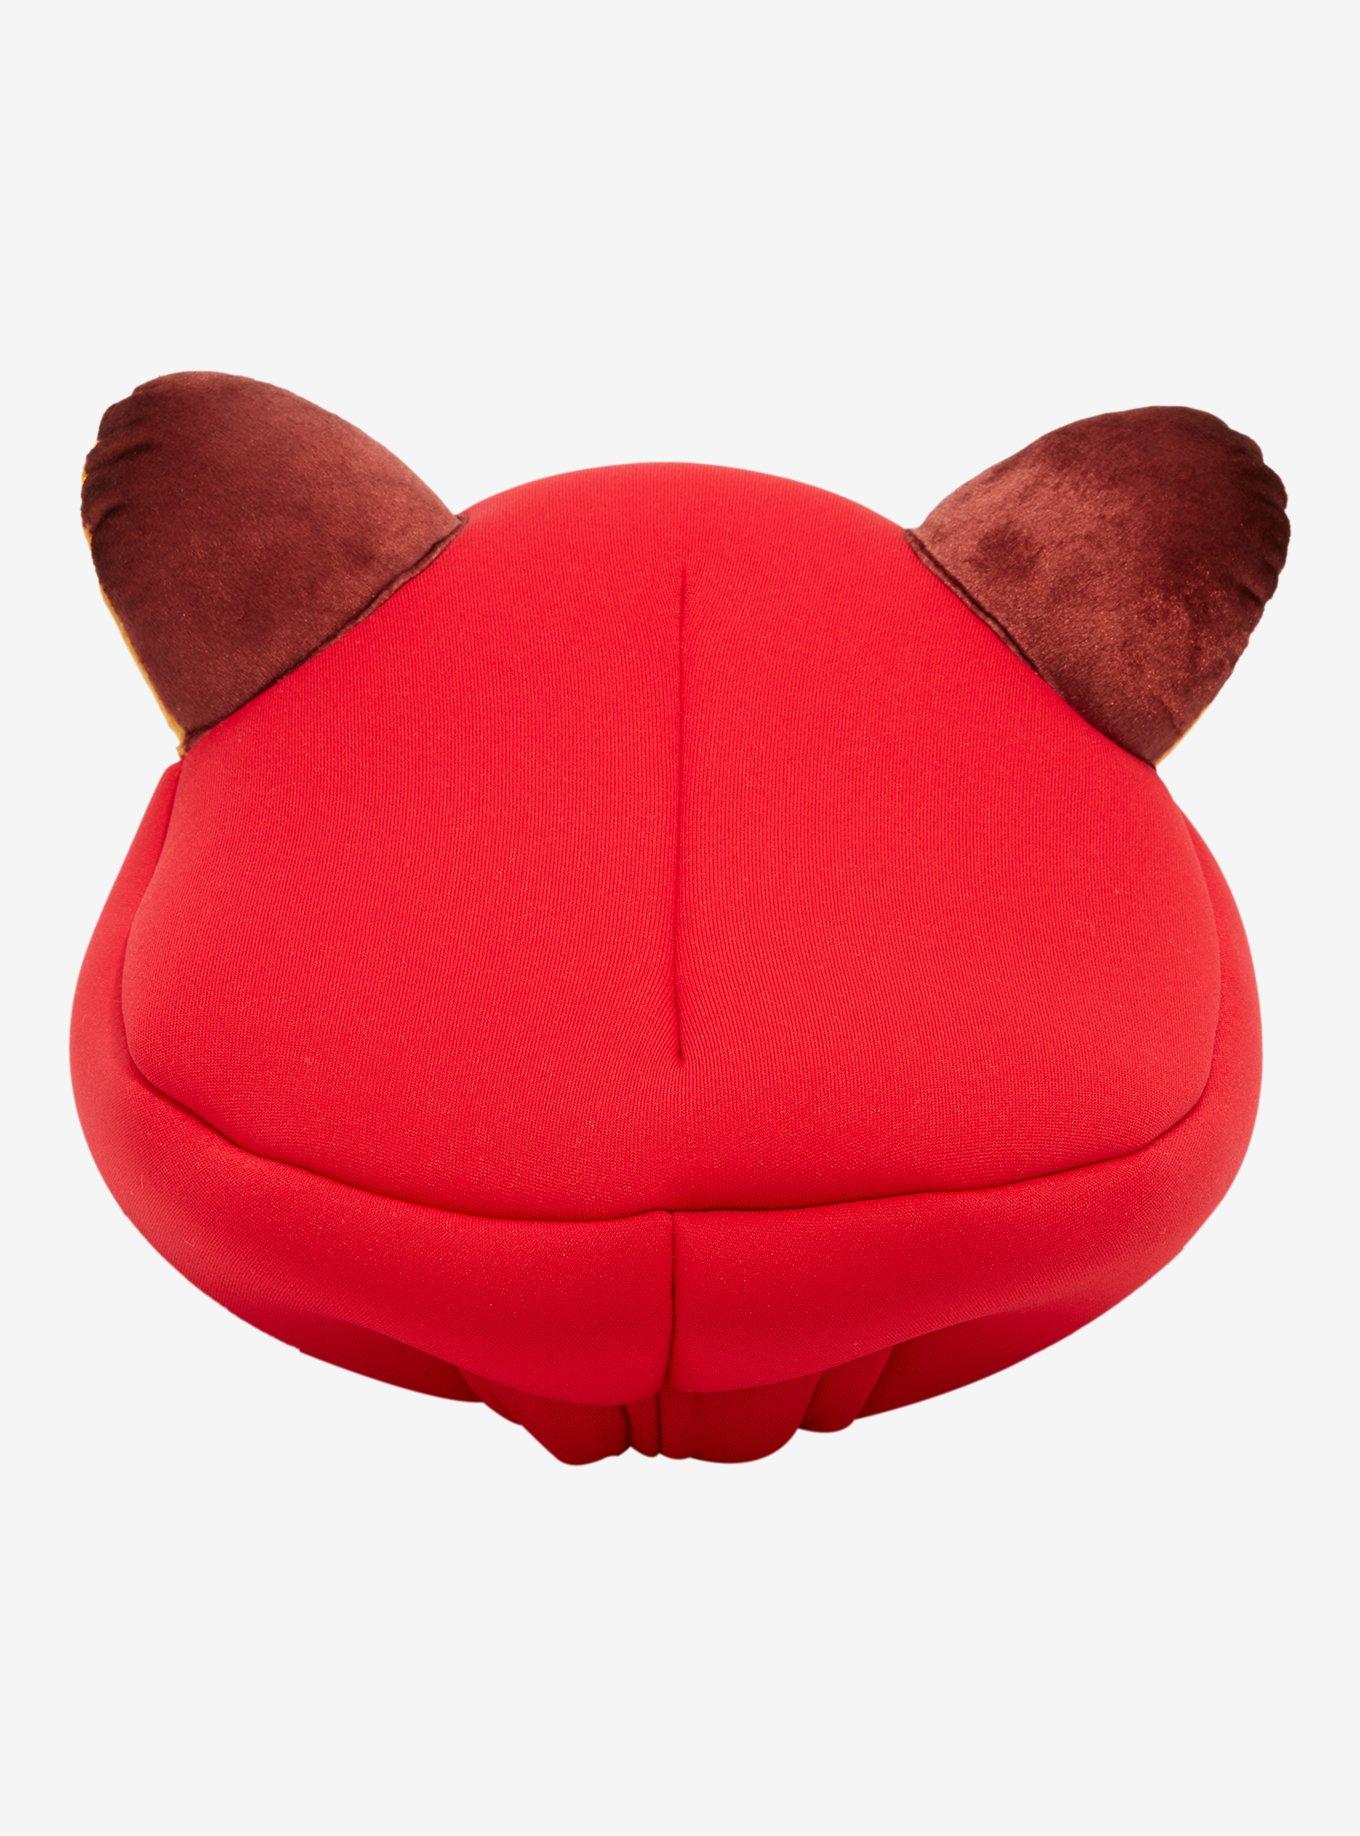 Super Mario Tanooki Mario 3D Ears Hat, , alternate